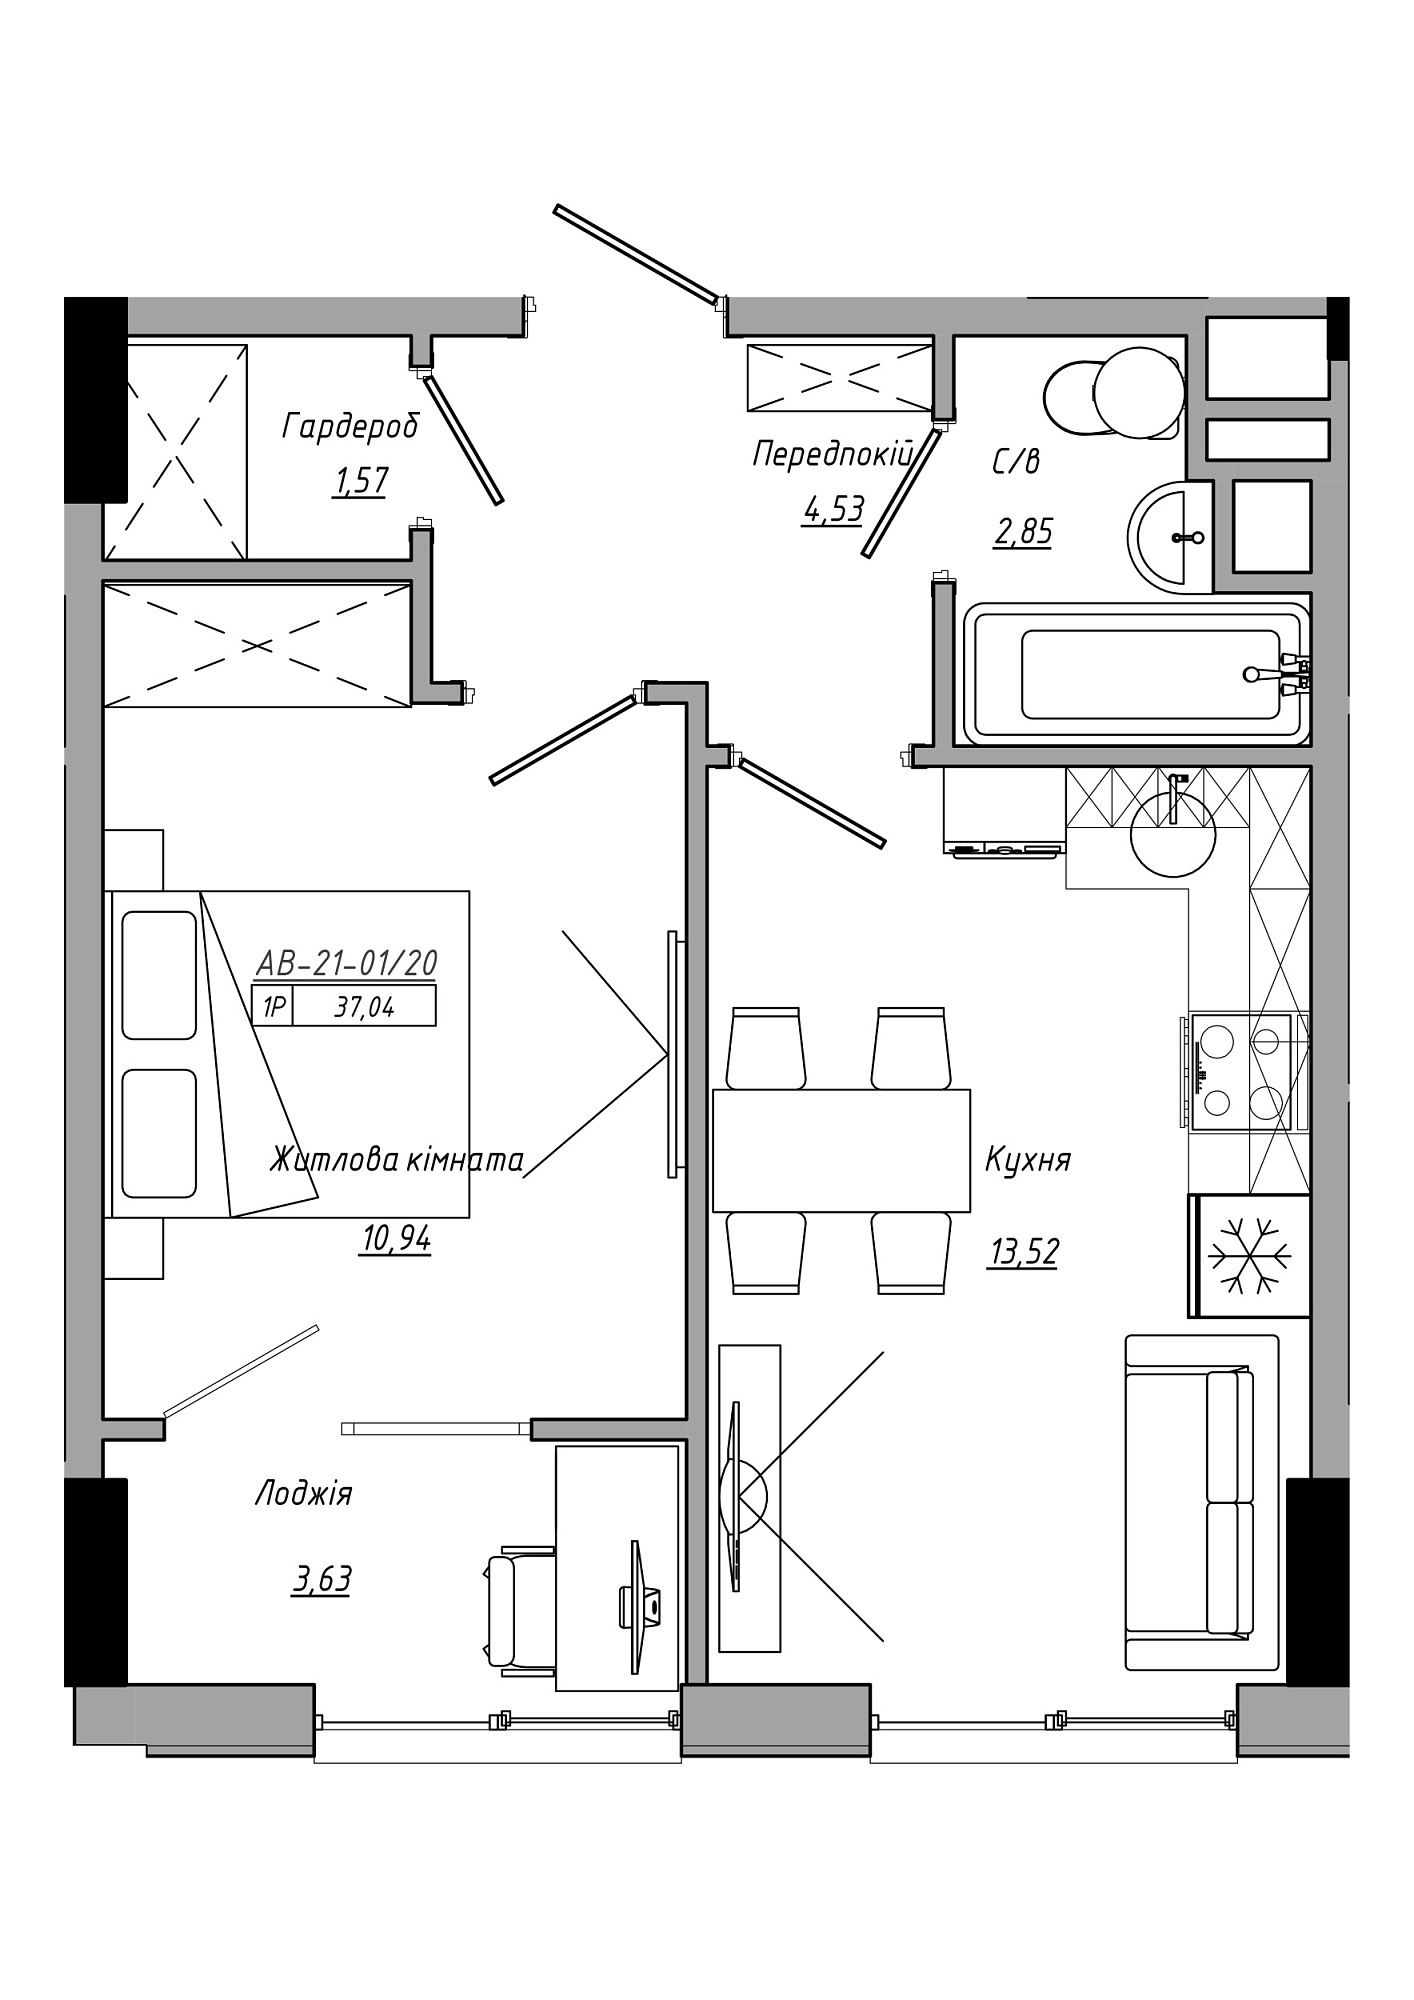 Планировка 1-к квартира площей 37.04м2, AB-21-01/00020.